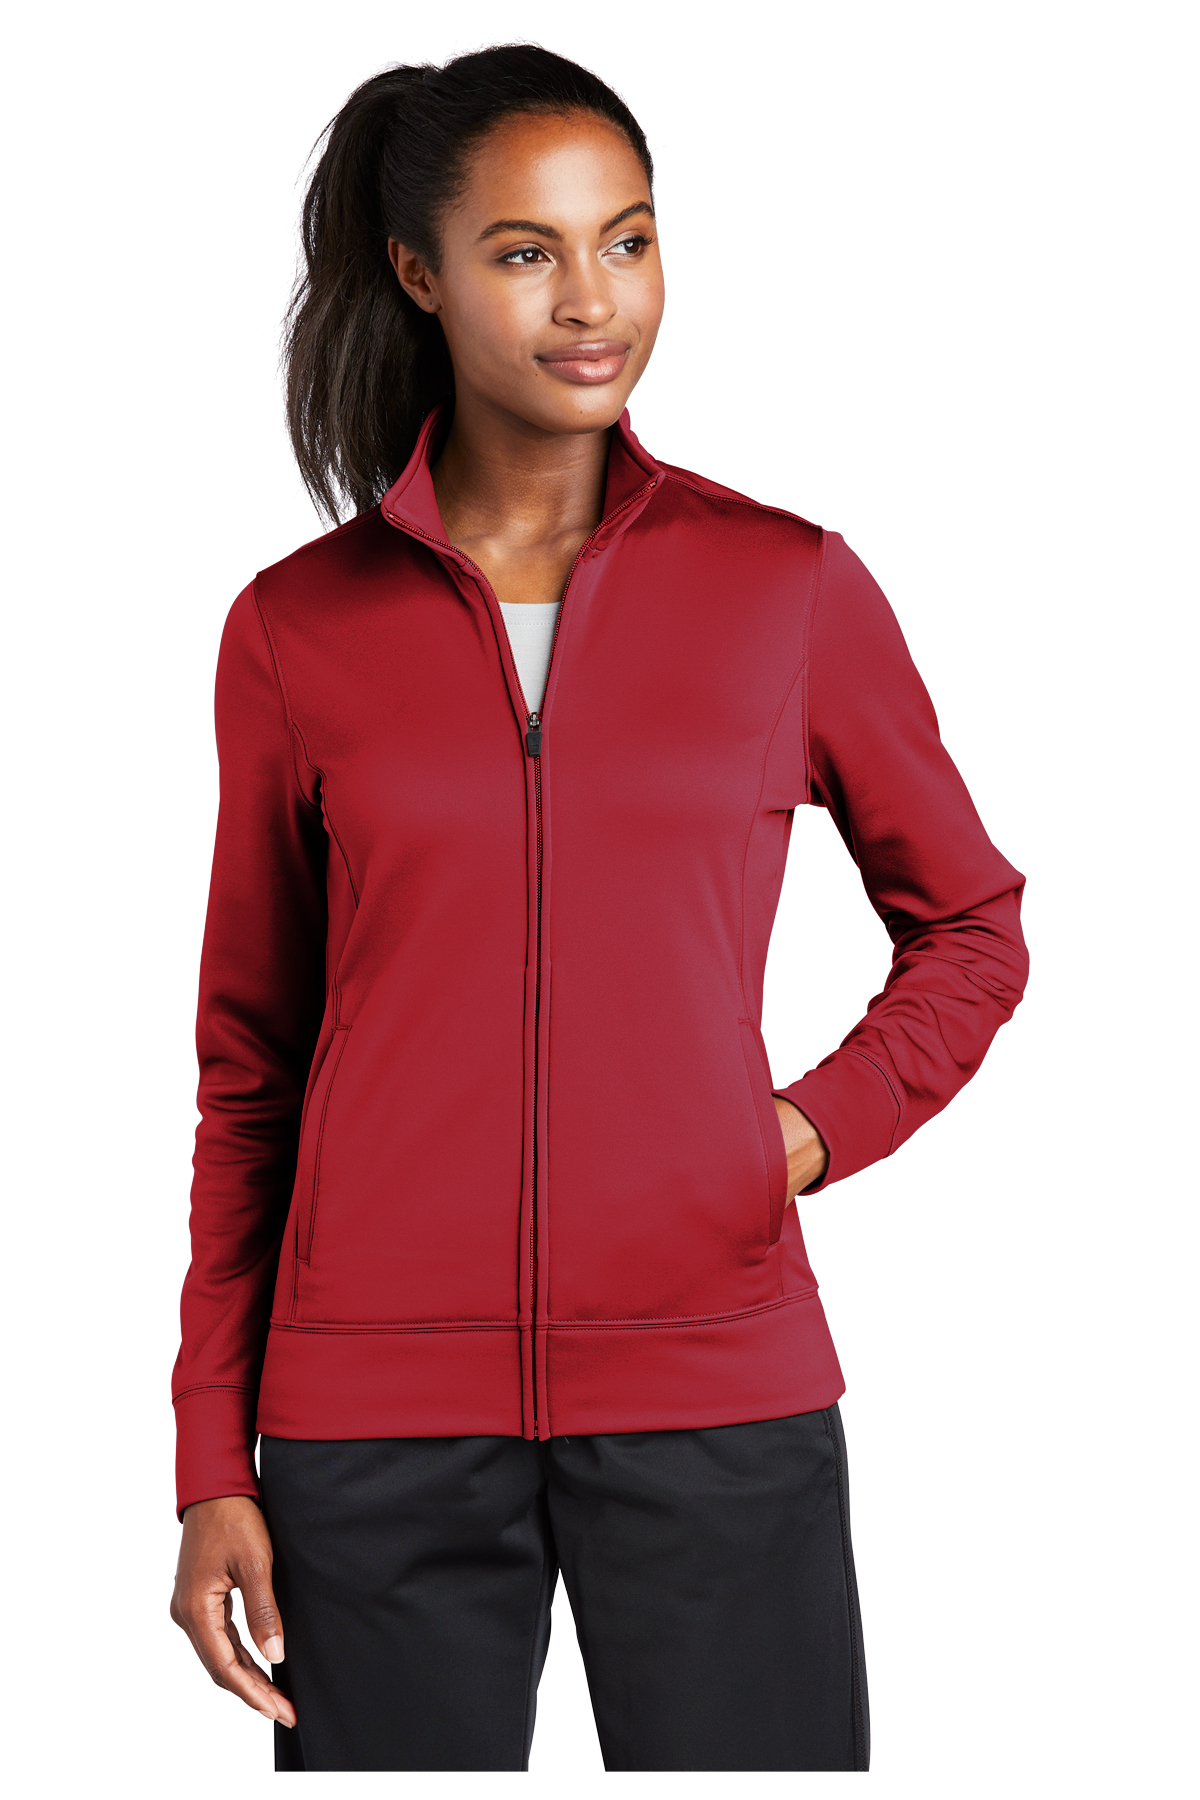 Sport-Tek Ladies Sport-Wick Fleece Full-Zip Jacket | Product | SanMar